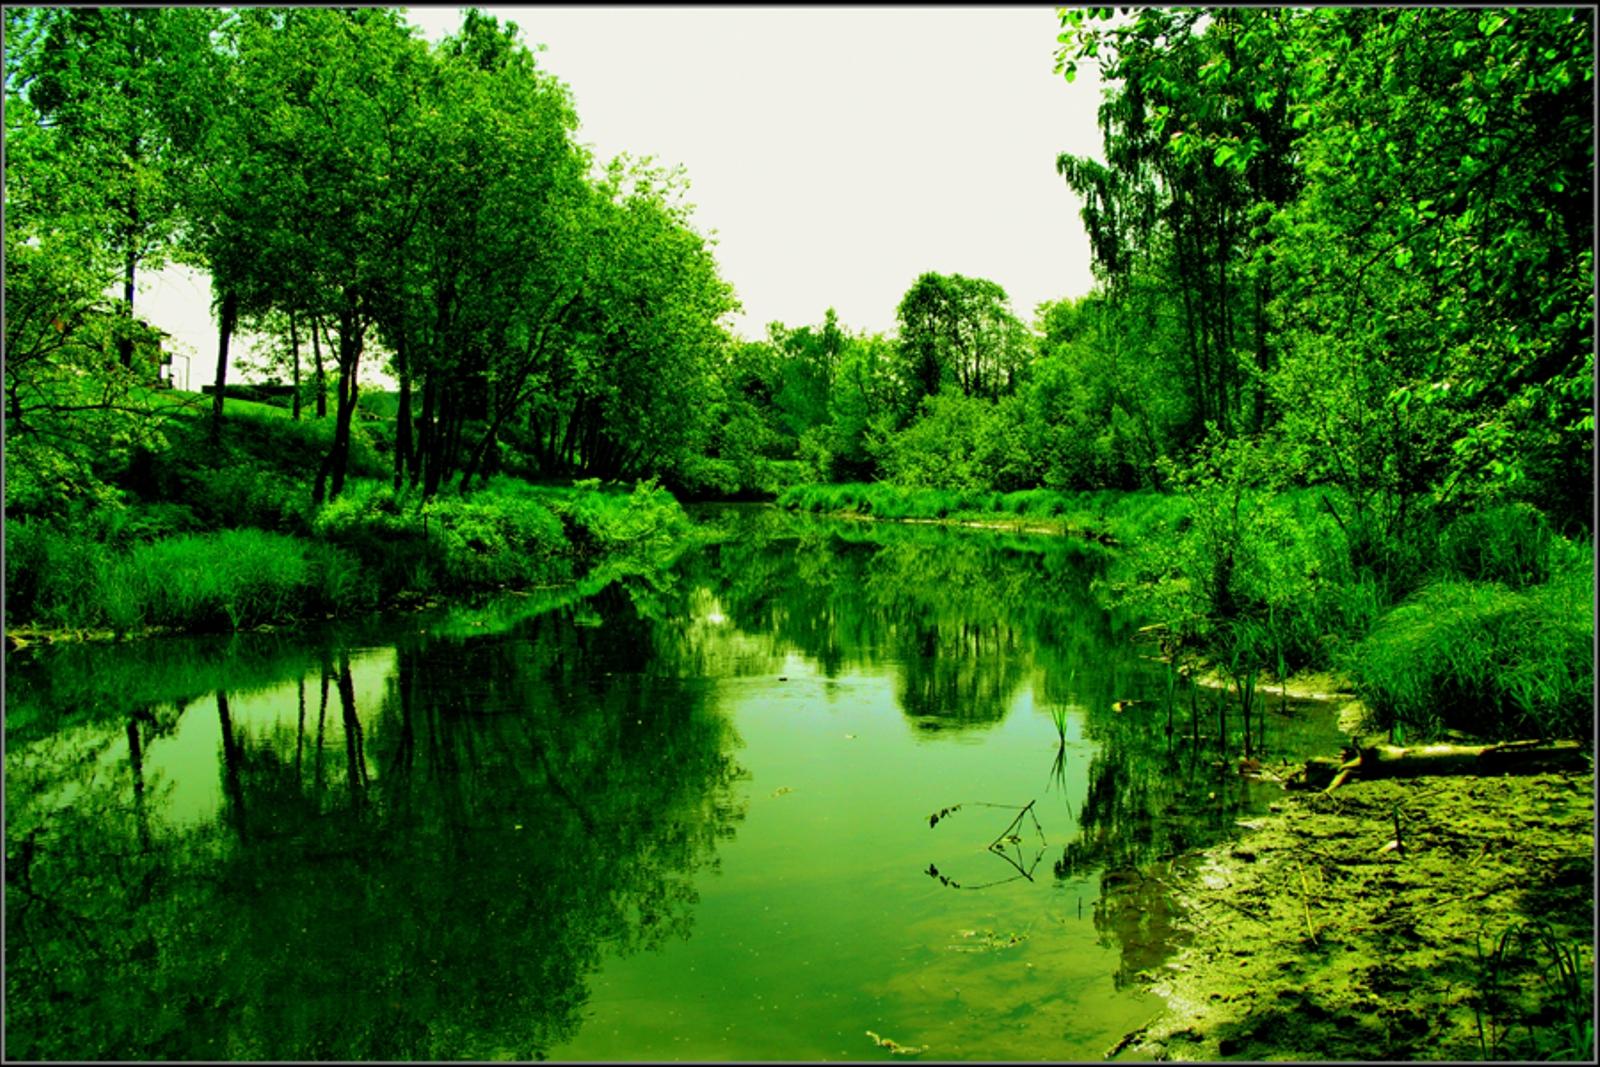 tapete hijau,natürliche landschaft,grün,natur,gewässer,wasser